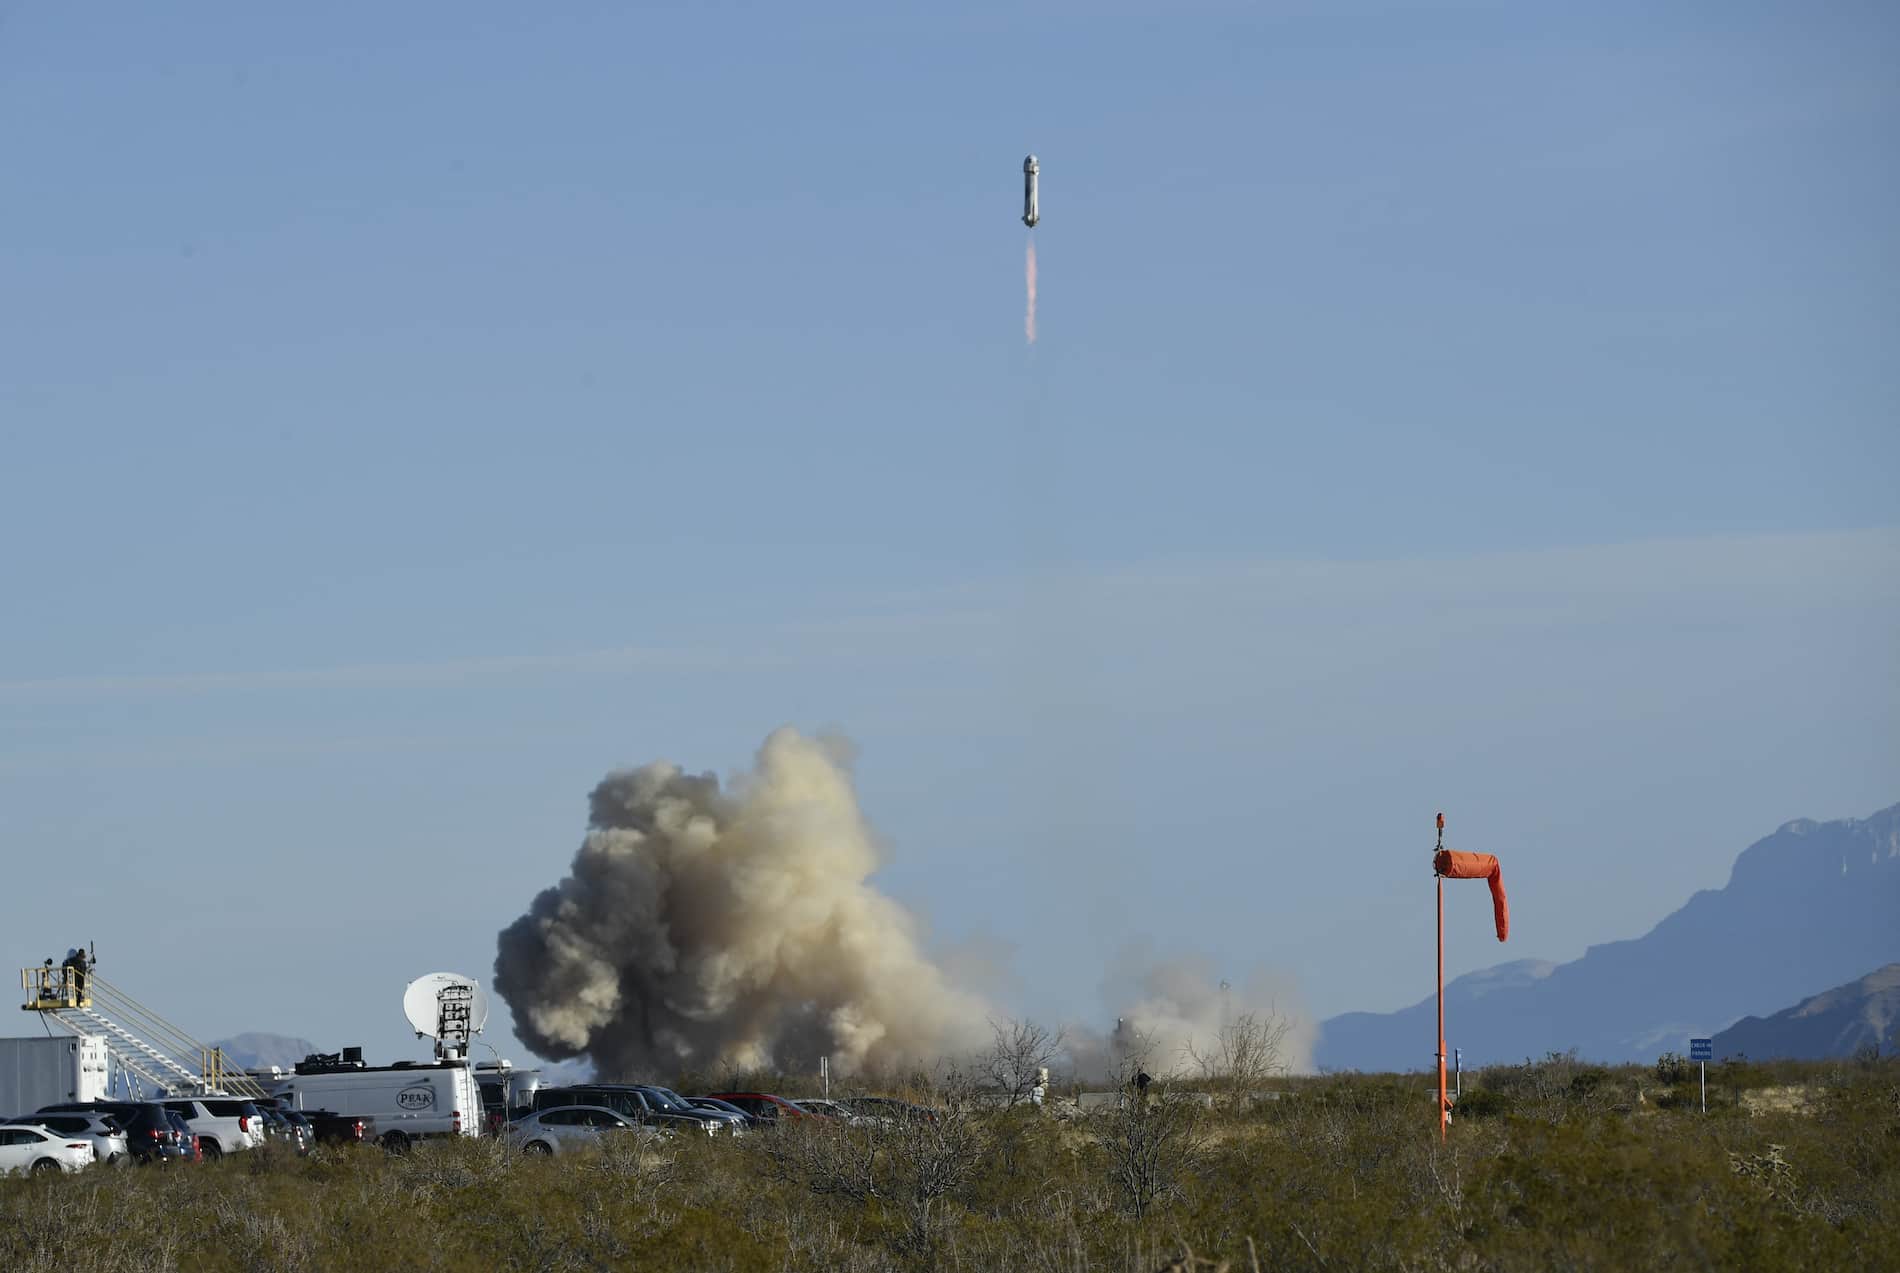 Cohete Blue Origin explota tras el despegue sin causar heridos